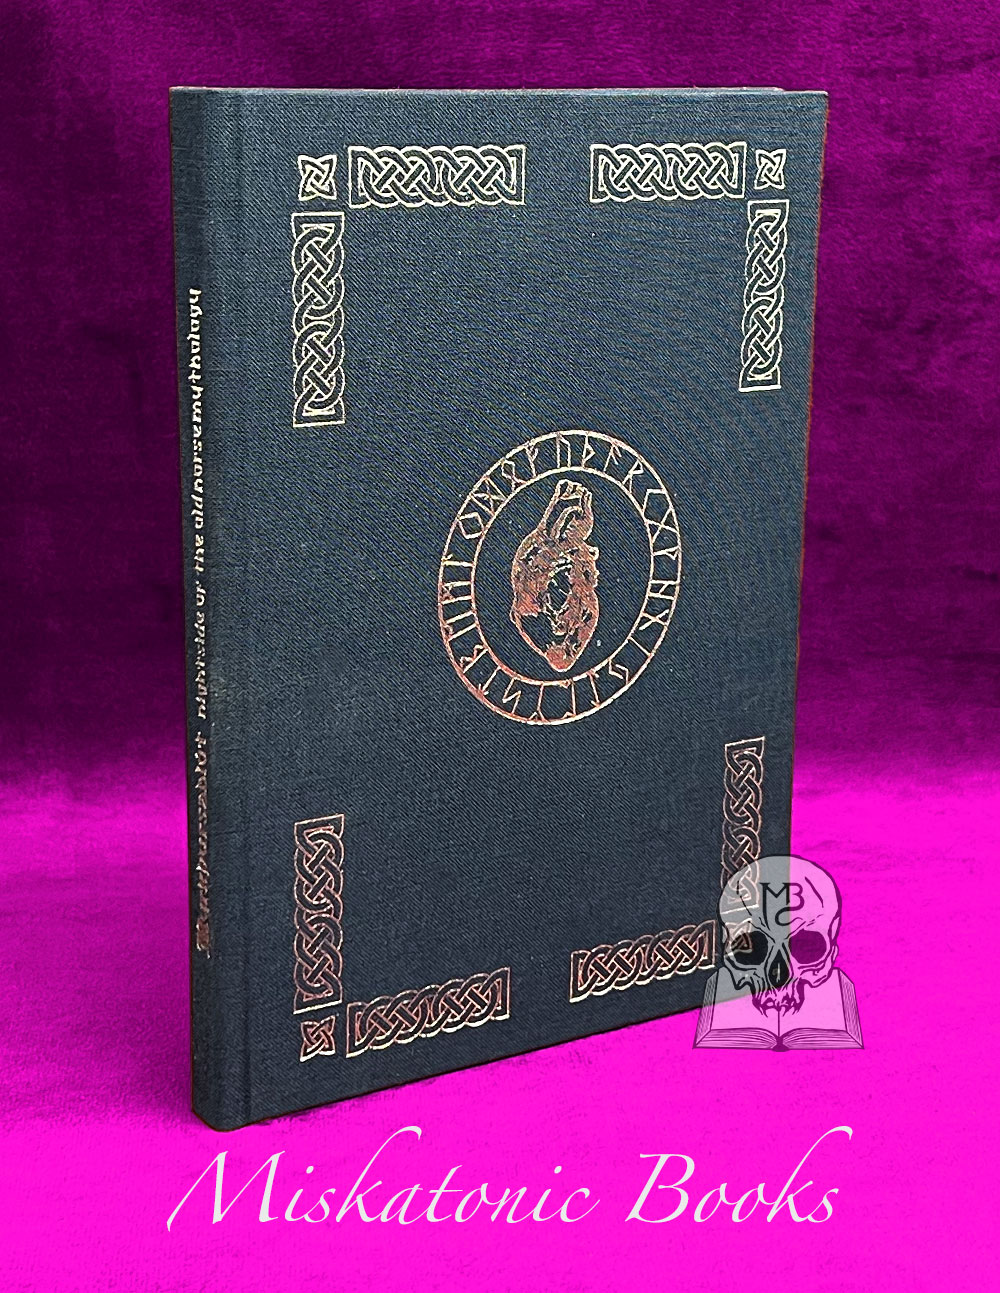 Myrkþursablót : Nightside of the Old Norse Mythology by Niðafjöll & Wilthijaz Yggr - Standard Hardcover Edition